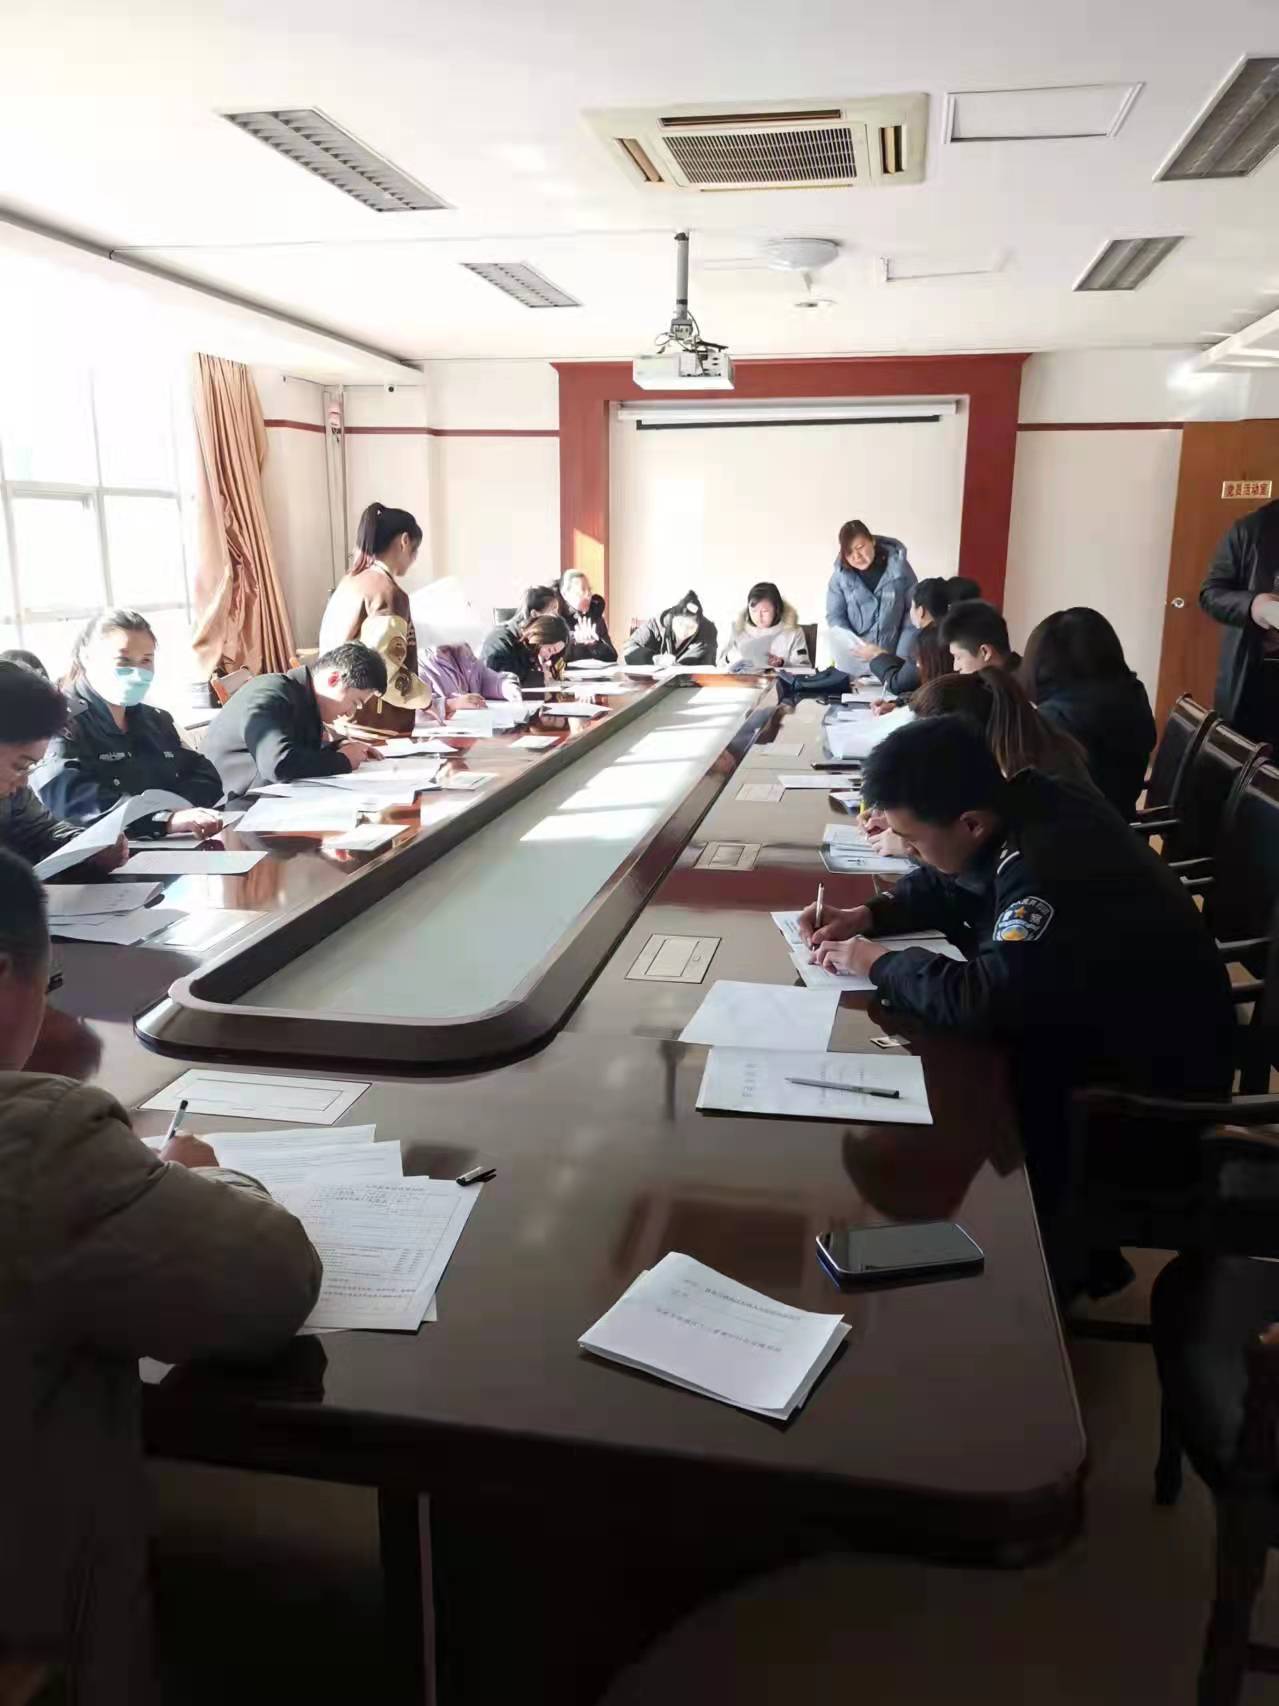 济南市钢城区人民法院签订劳动合同现场IMG_5822(20211201-221608).JPG